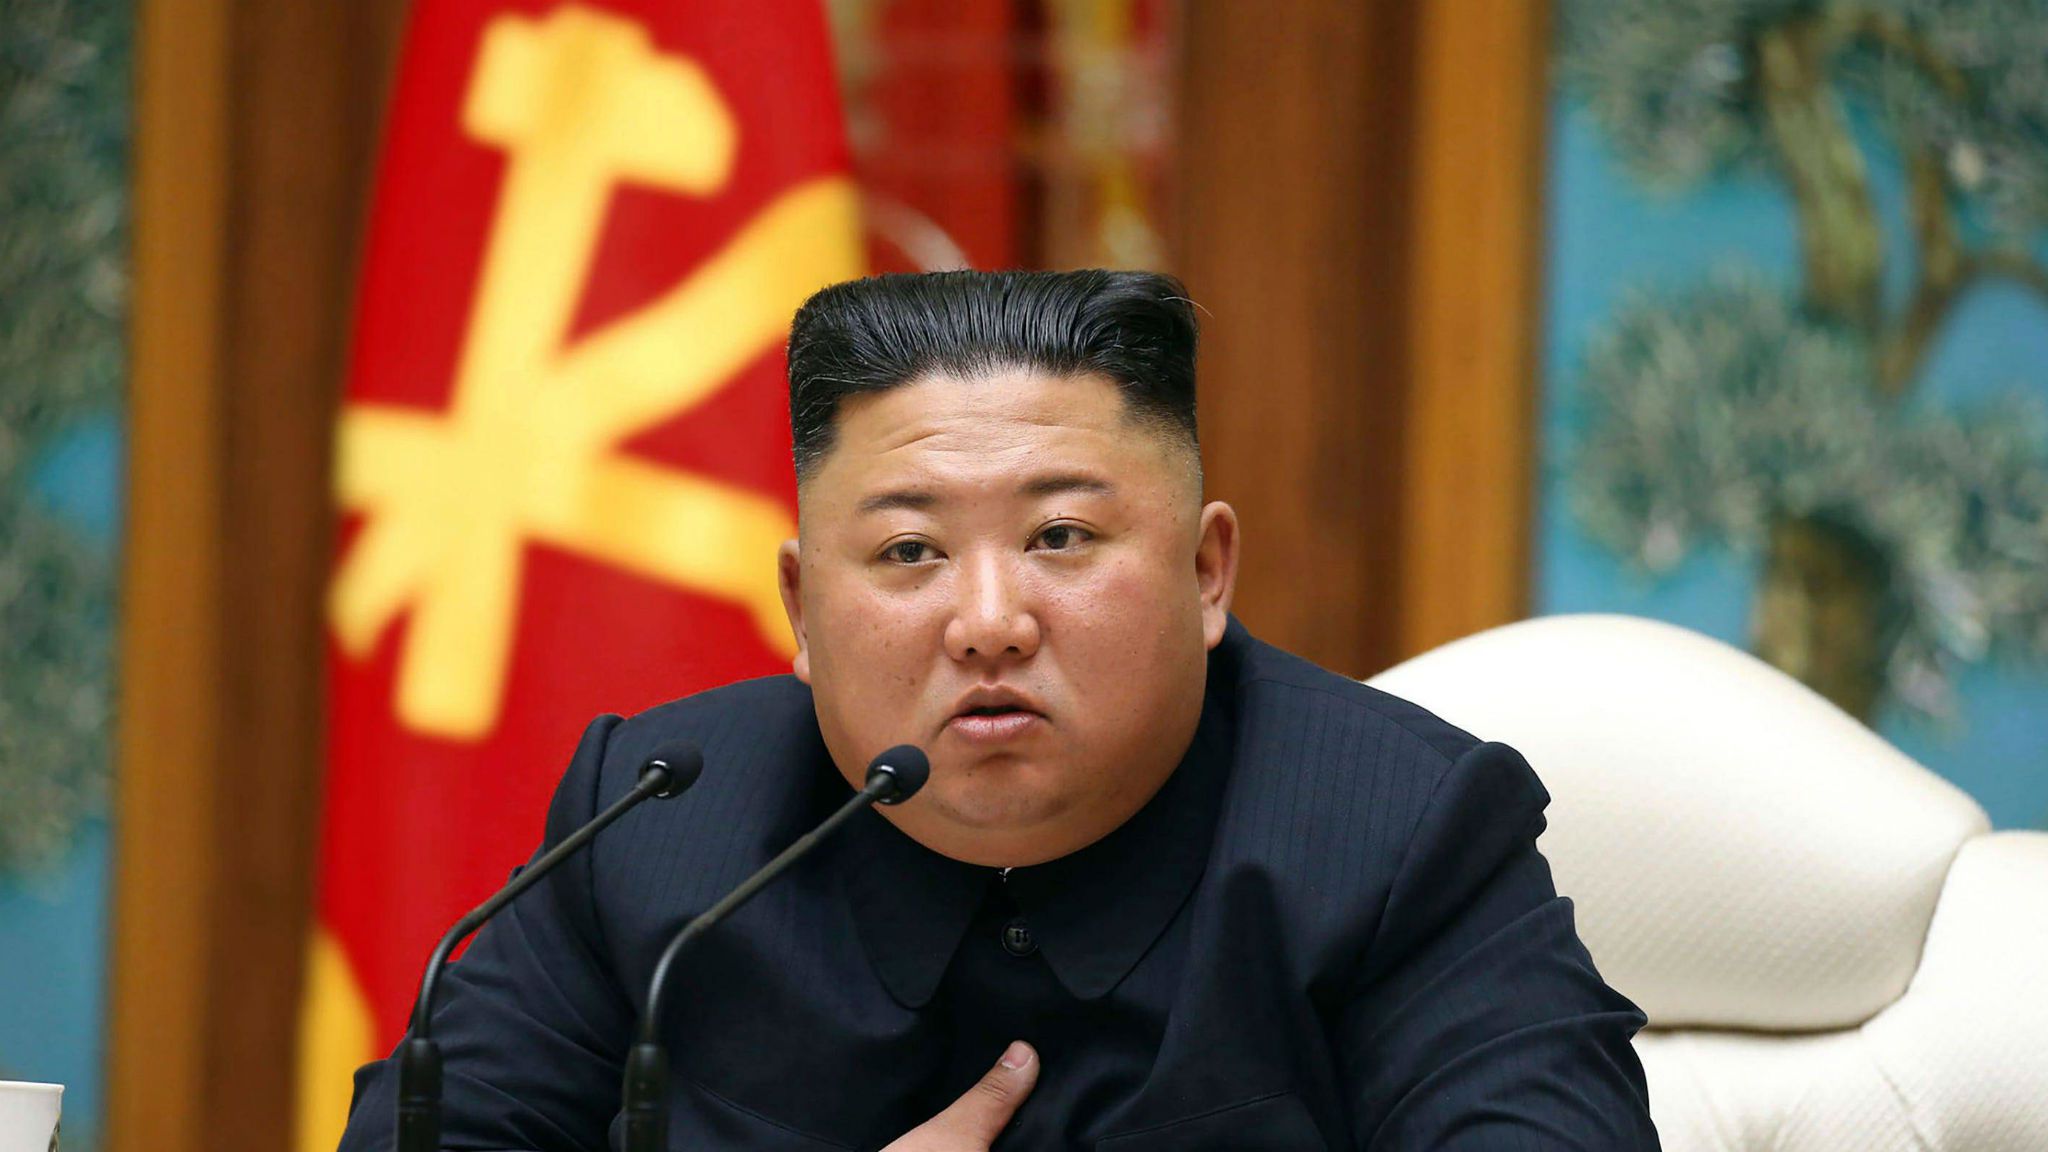 Kim Jong-Un : une star relance les rumeurs sur sa mort